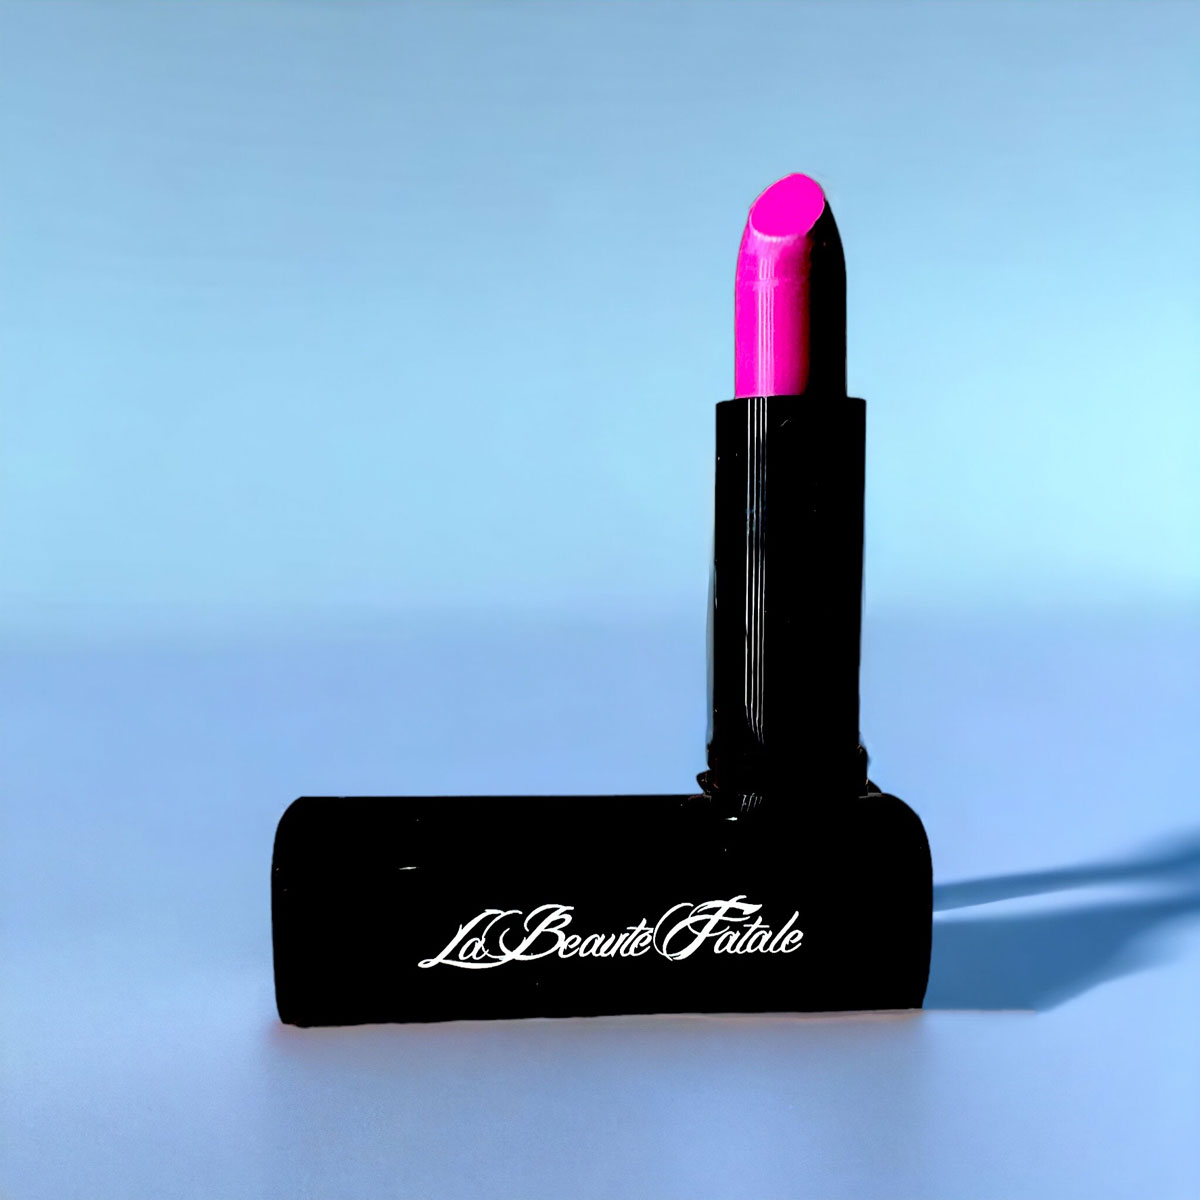 La Beaute Fatale Lipstick